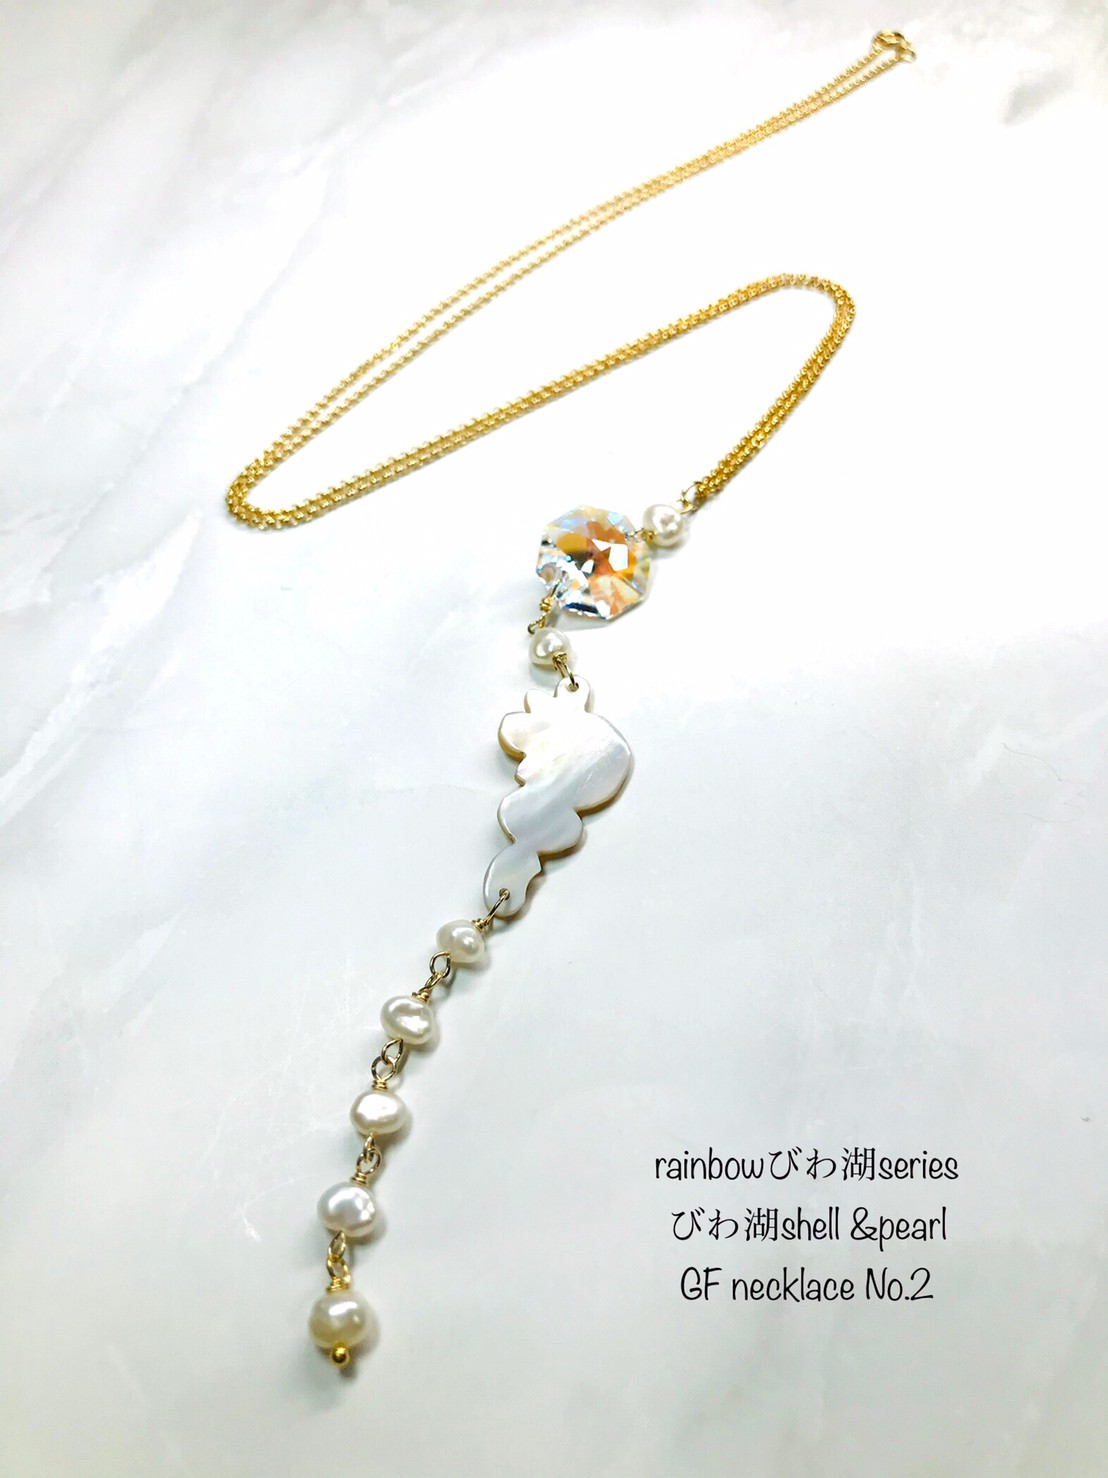 新商品《びわ湖shell &pearl GF necklace No.2≫を掲載致しました!!!!!